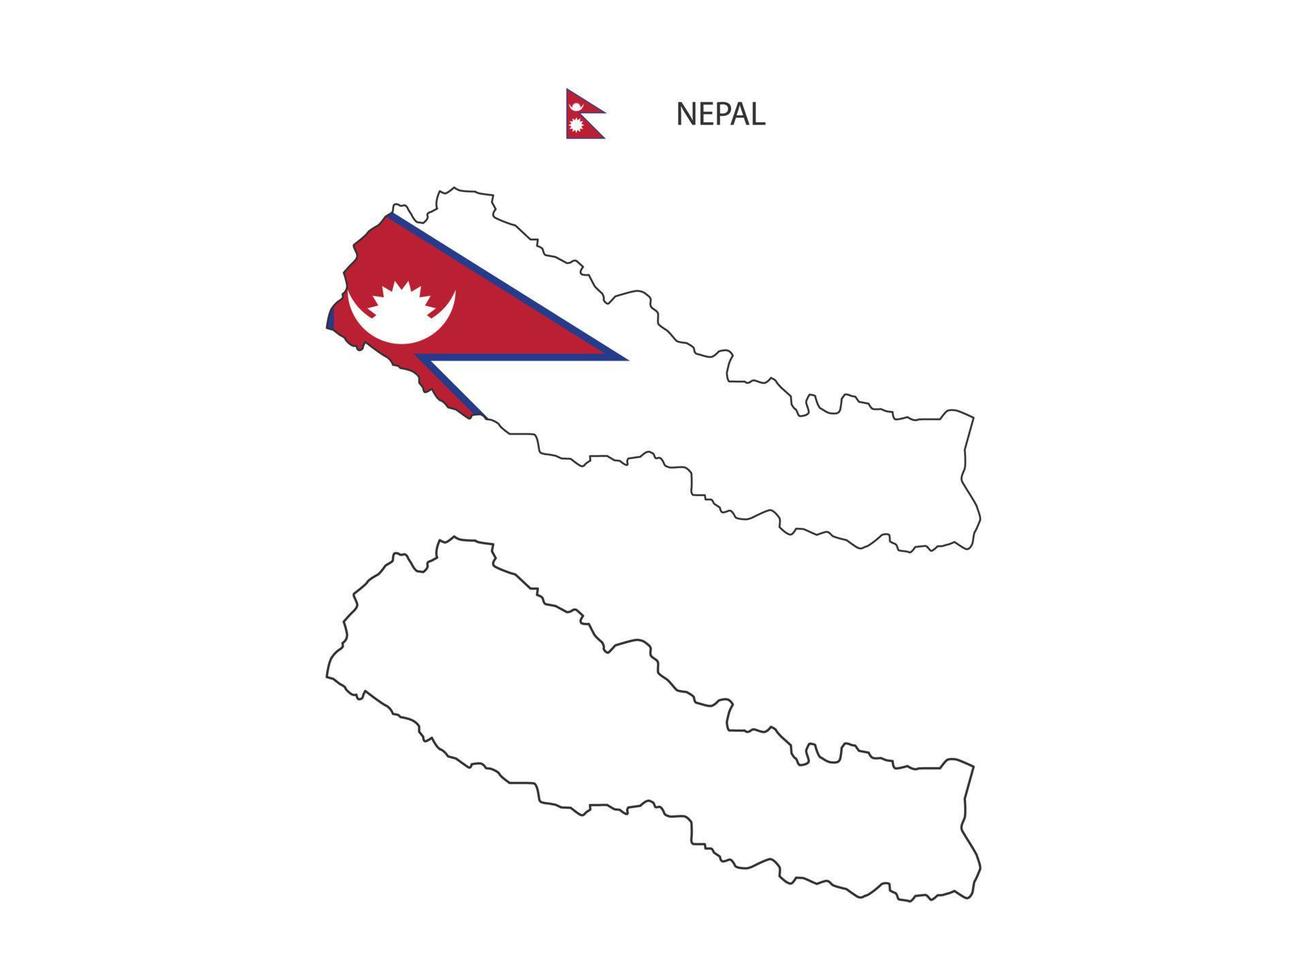 vetor da cidade do mapa do nepal dividido pelo estilo de simplicidade do esboço. tem 2 versões, versão de linha fina preta e cor da versão da bandeira do país. ambos os mapas estavam no fundo branco.